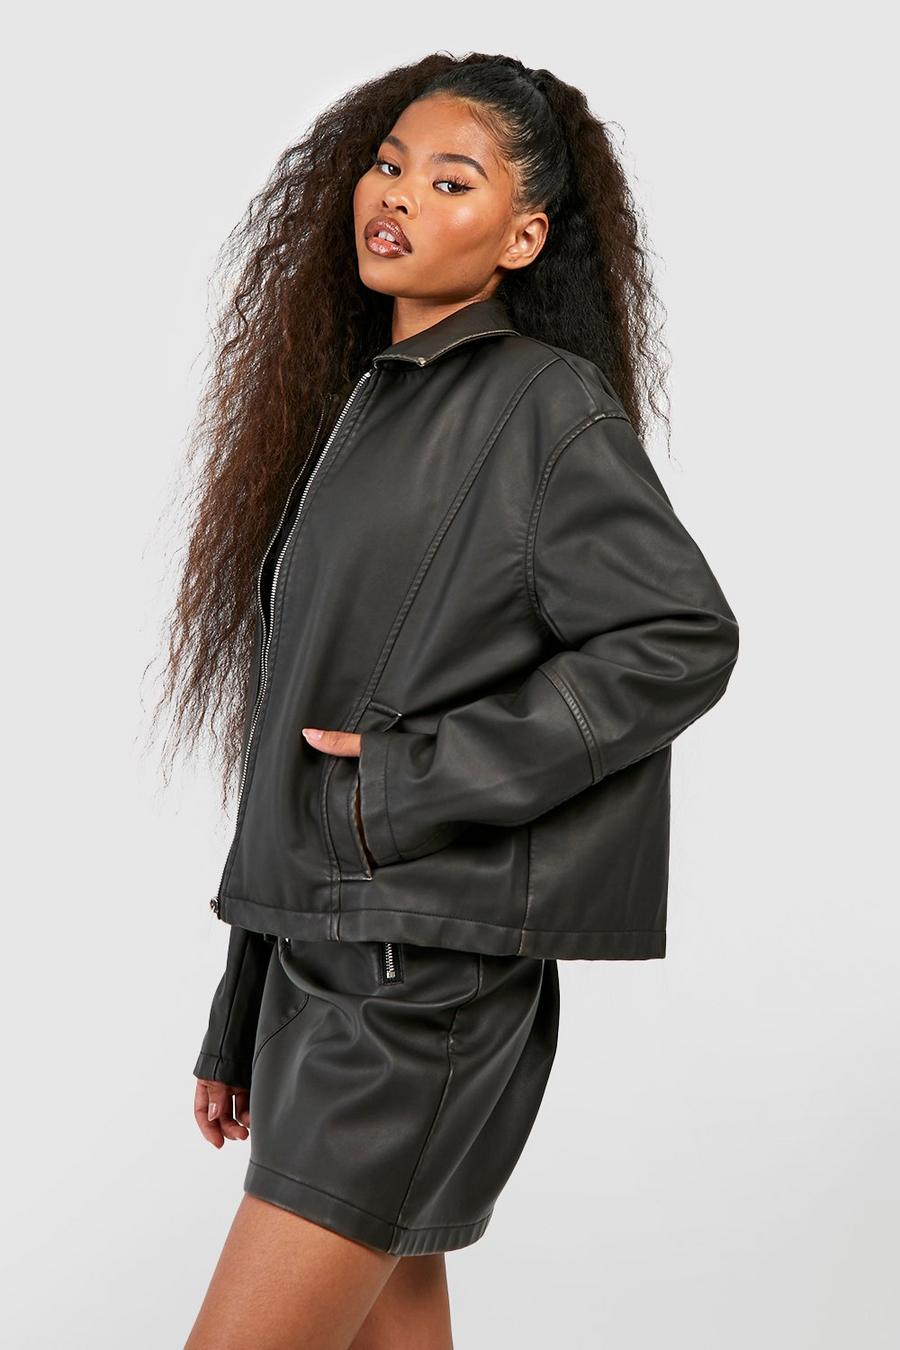 Black Vintage Look Faux Leather Zip Jacket